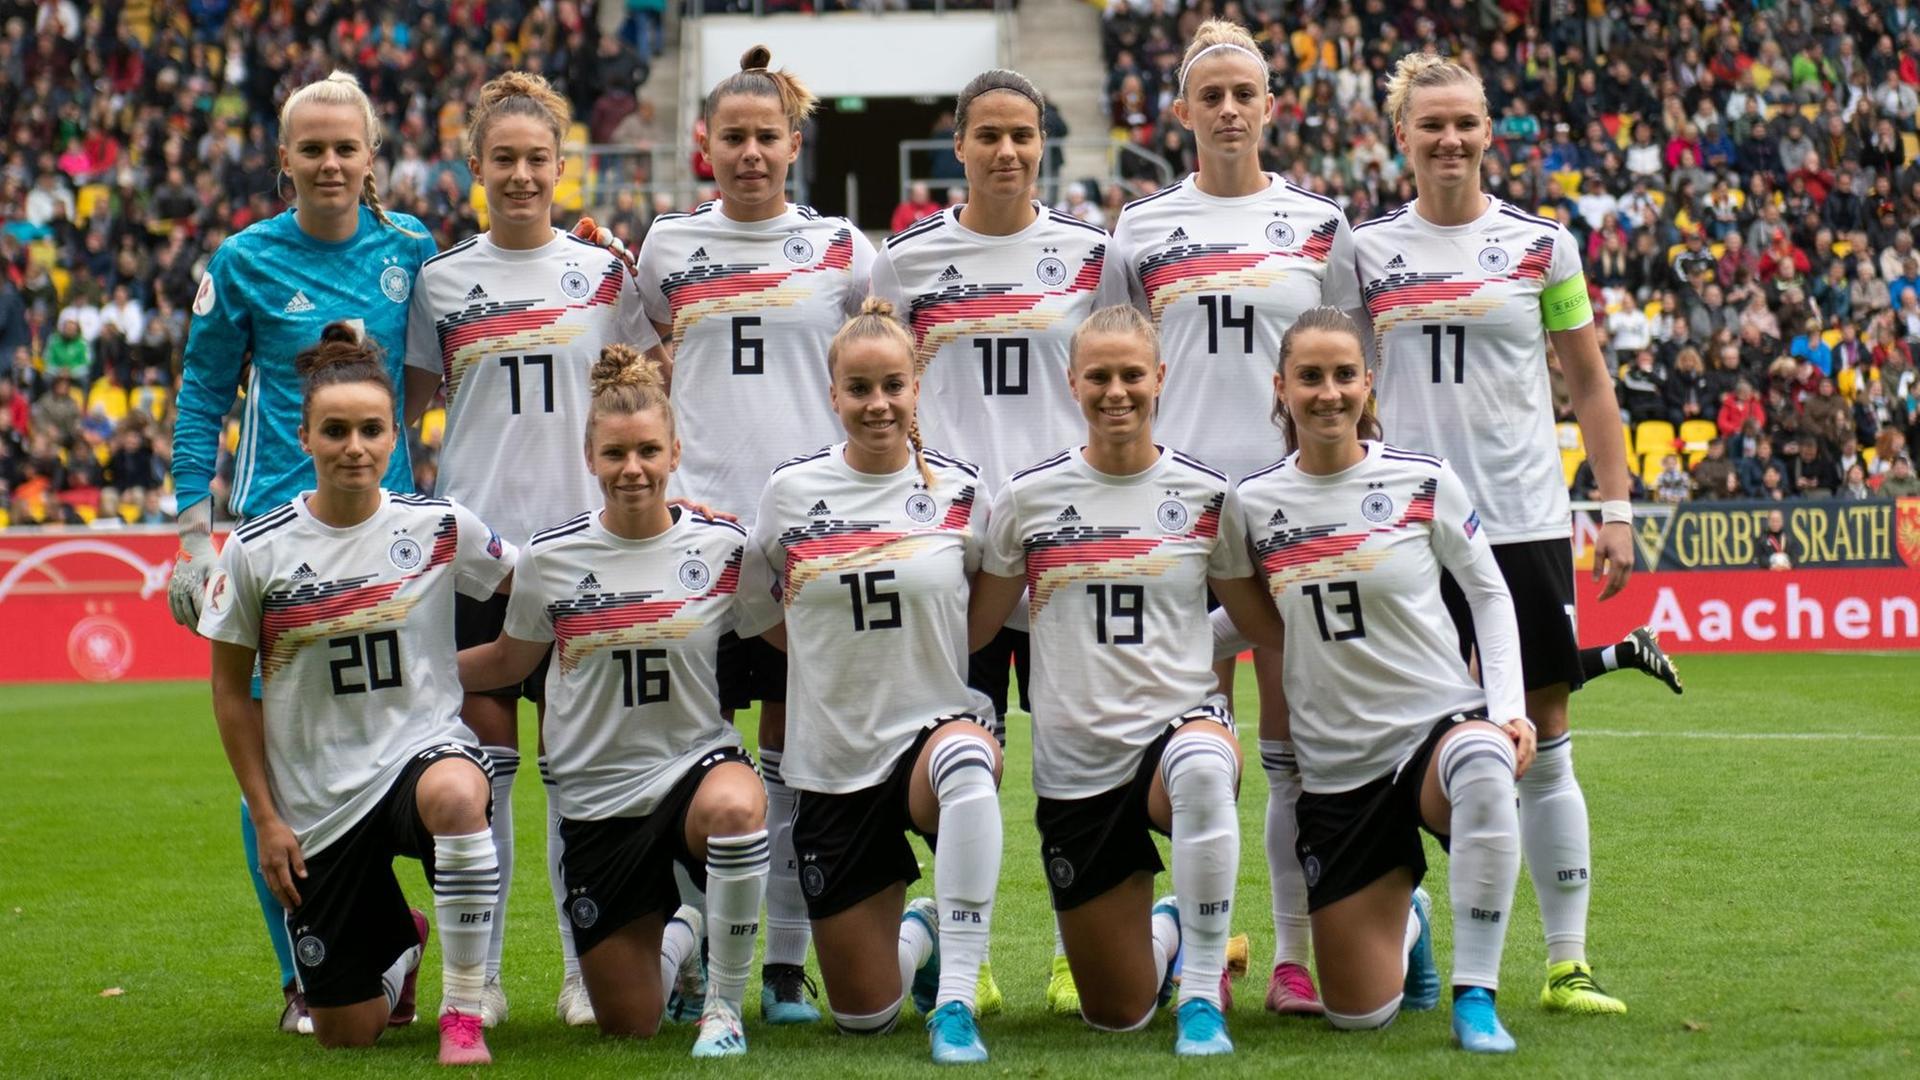 Ein Gruppen-Bild von einem Teil der Frauen-Fußball-National-Mannschaft.